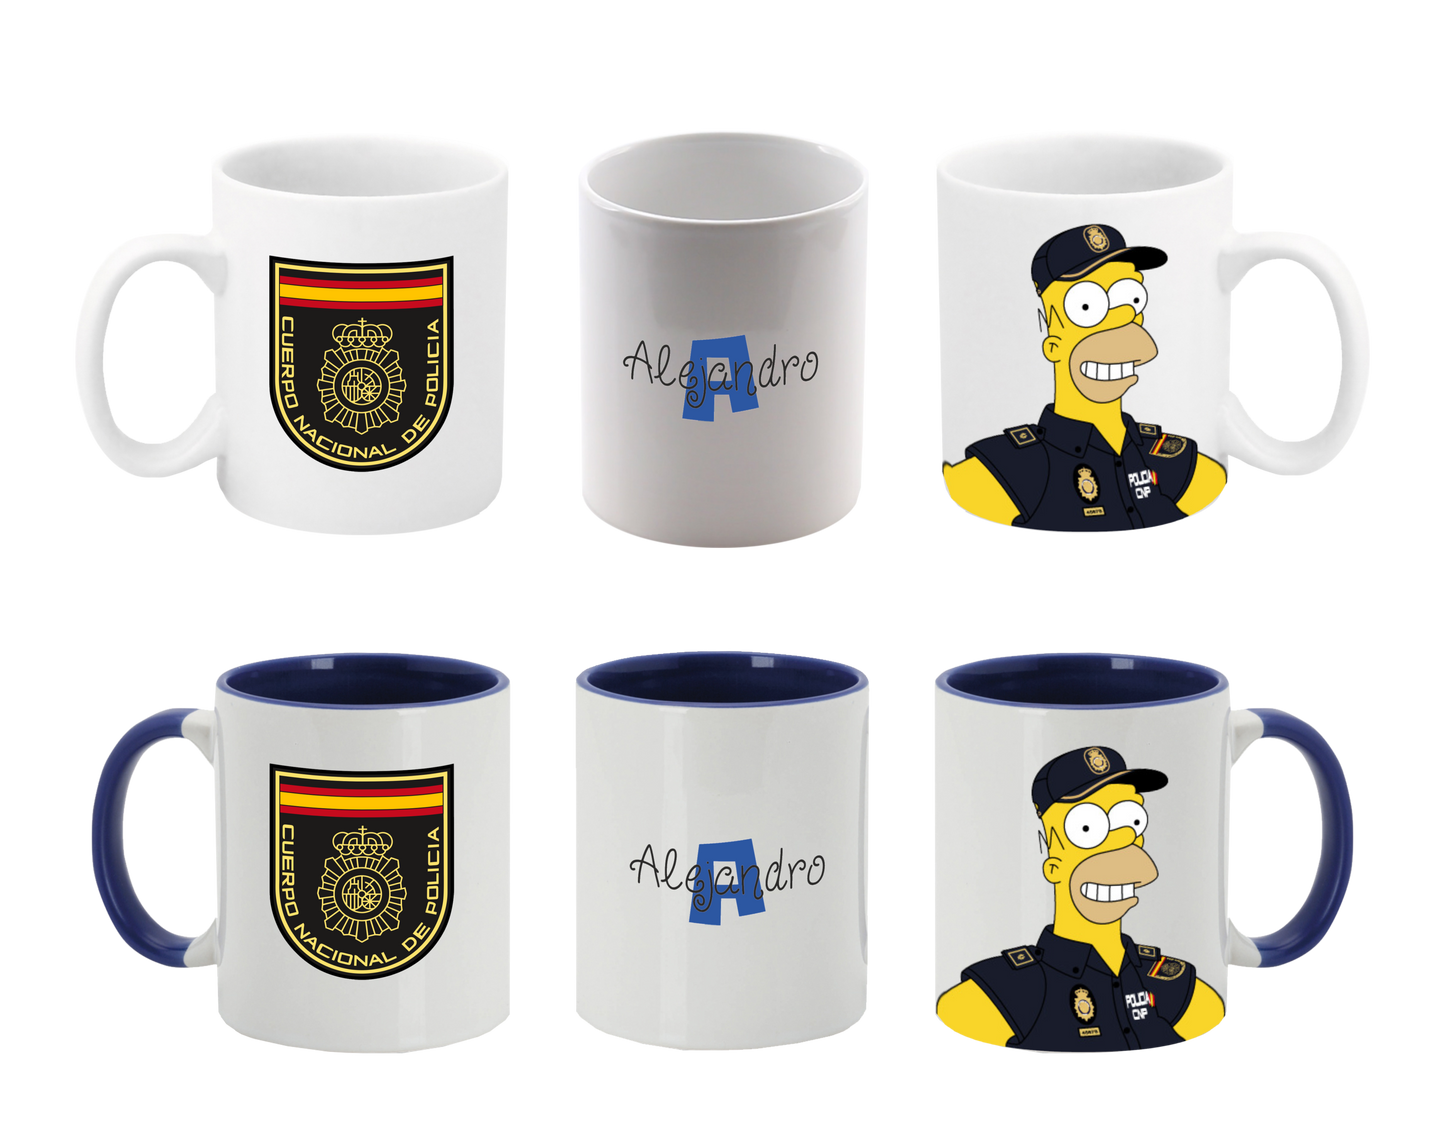 Tazas Simpson Policía Nacional